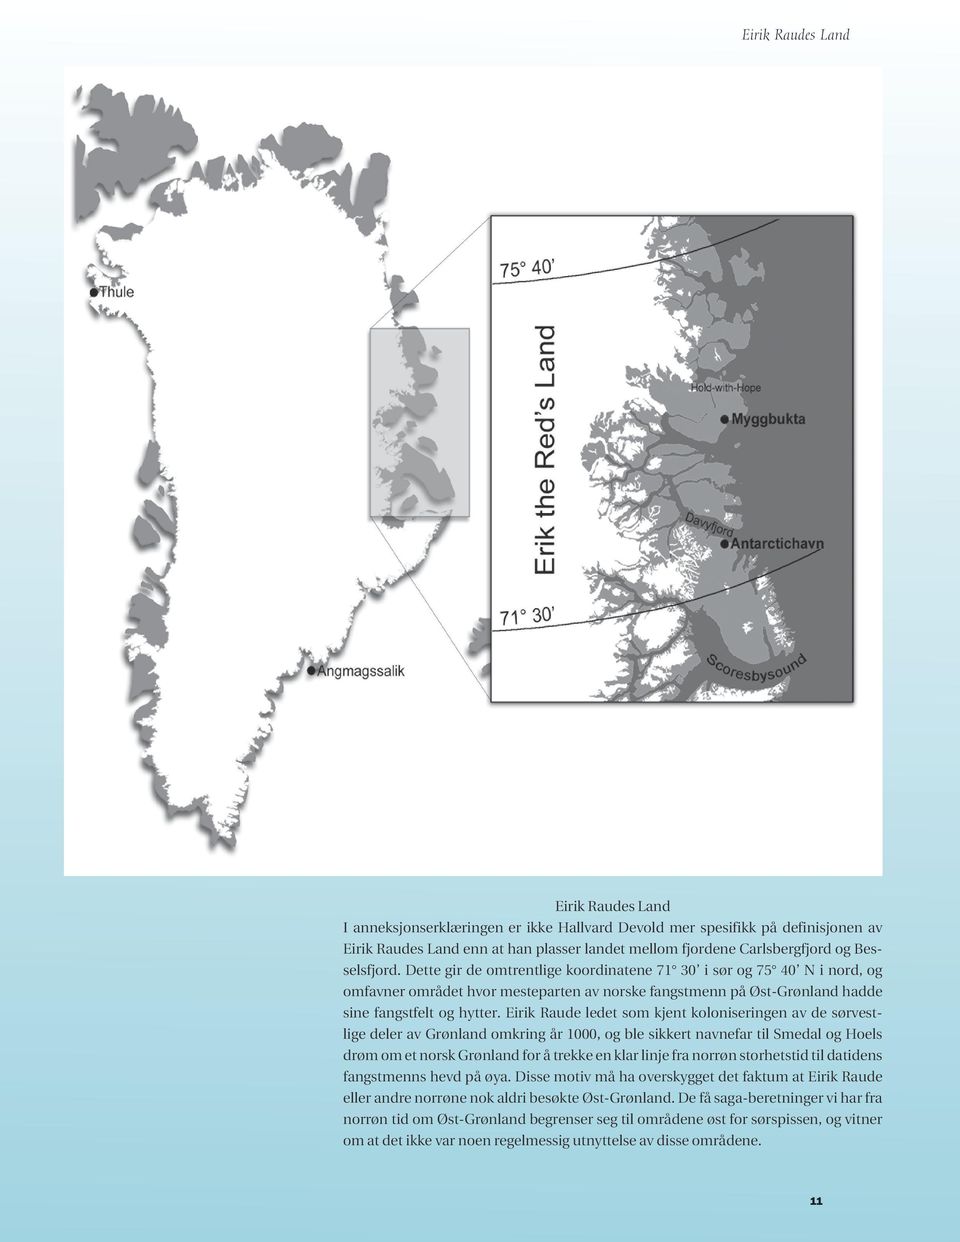 Eirik Raude ledet som kjent koloniseringen av de sørvestlige deler av Grønland omkring år 1000, og ble sikkert navnefar til Smedal og Hoels drøm om et norsk Grønland for å trekke en klar linje fra